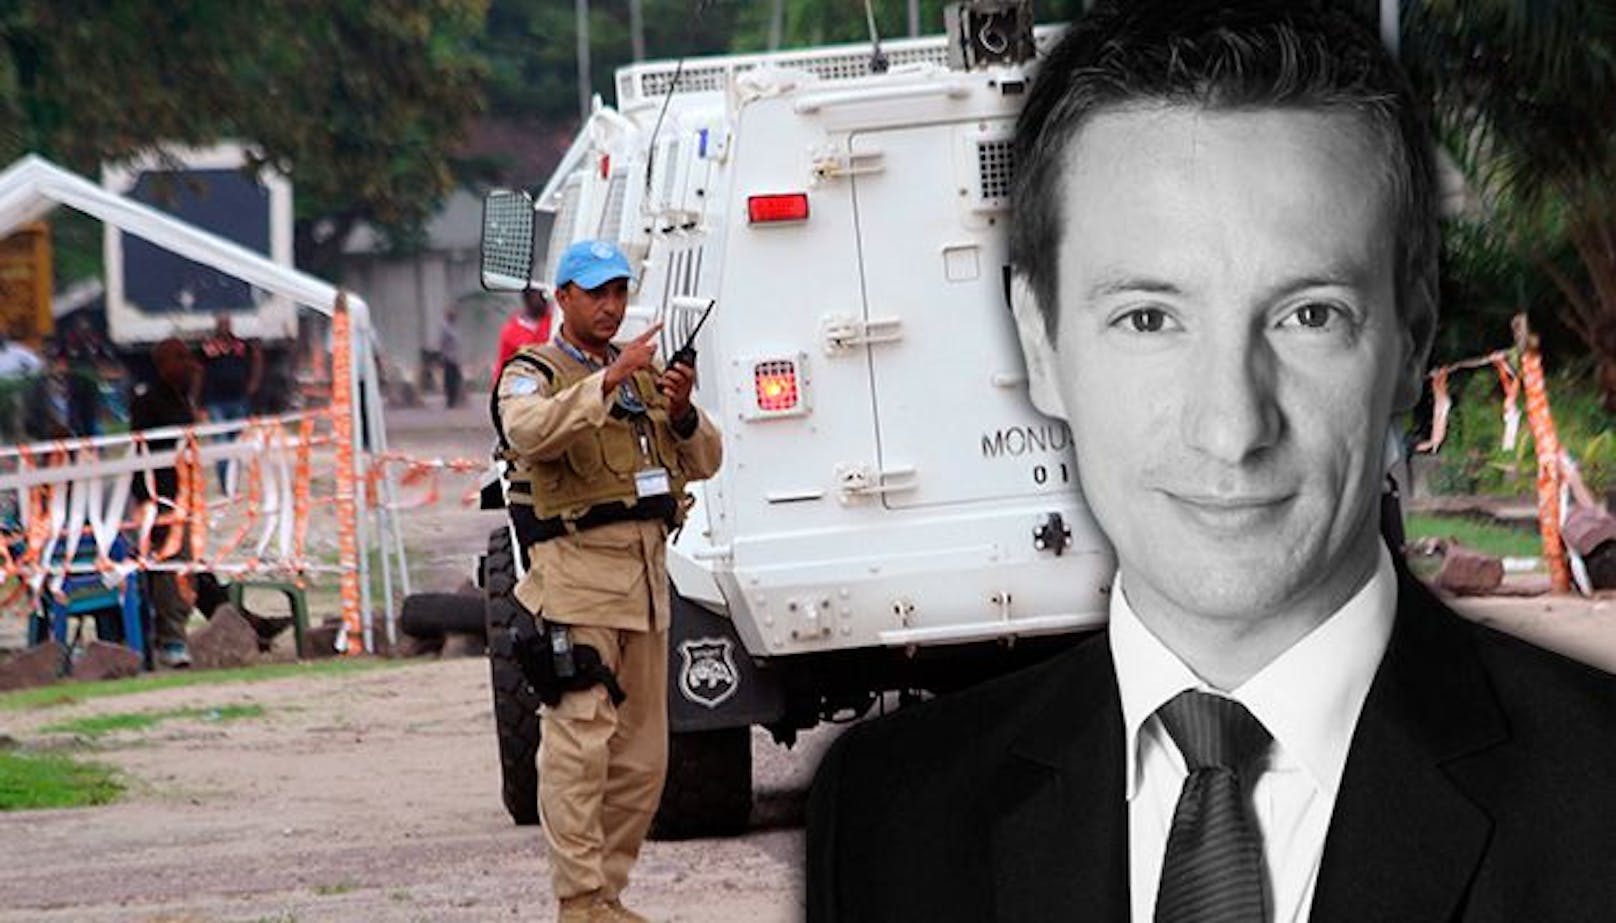 Italienischer Botschafter in Kongo bei Überfall getötet